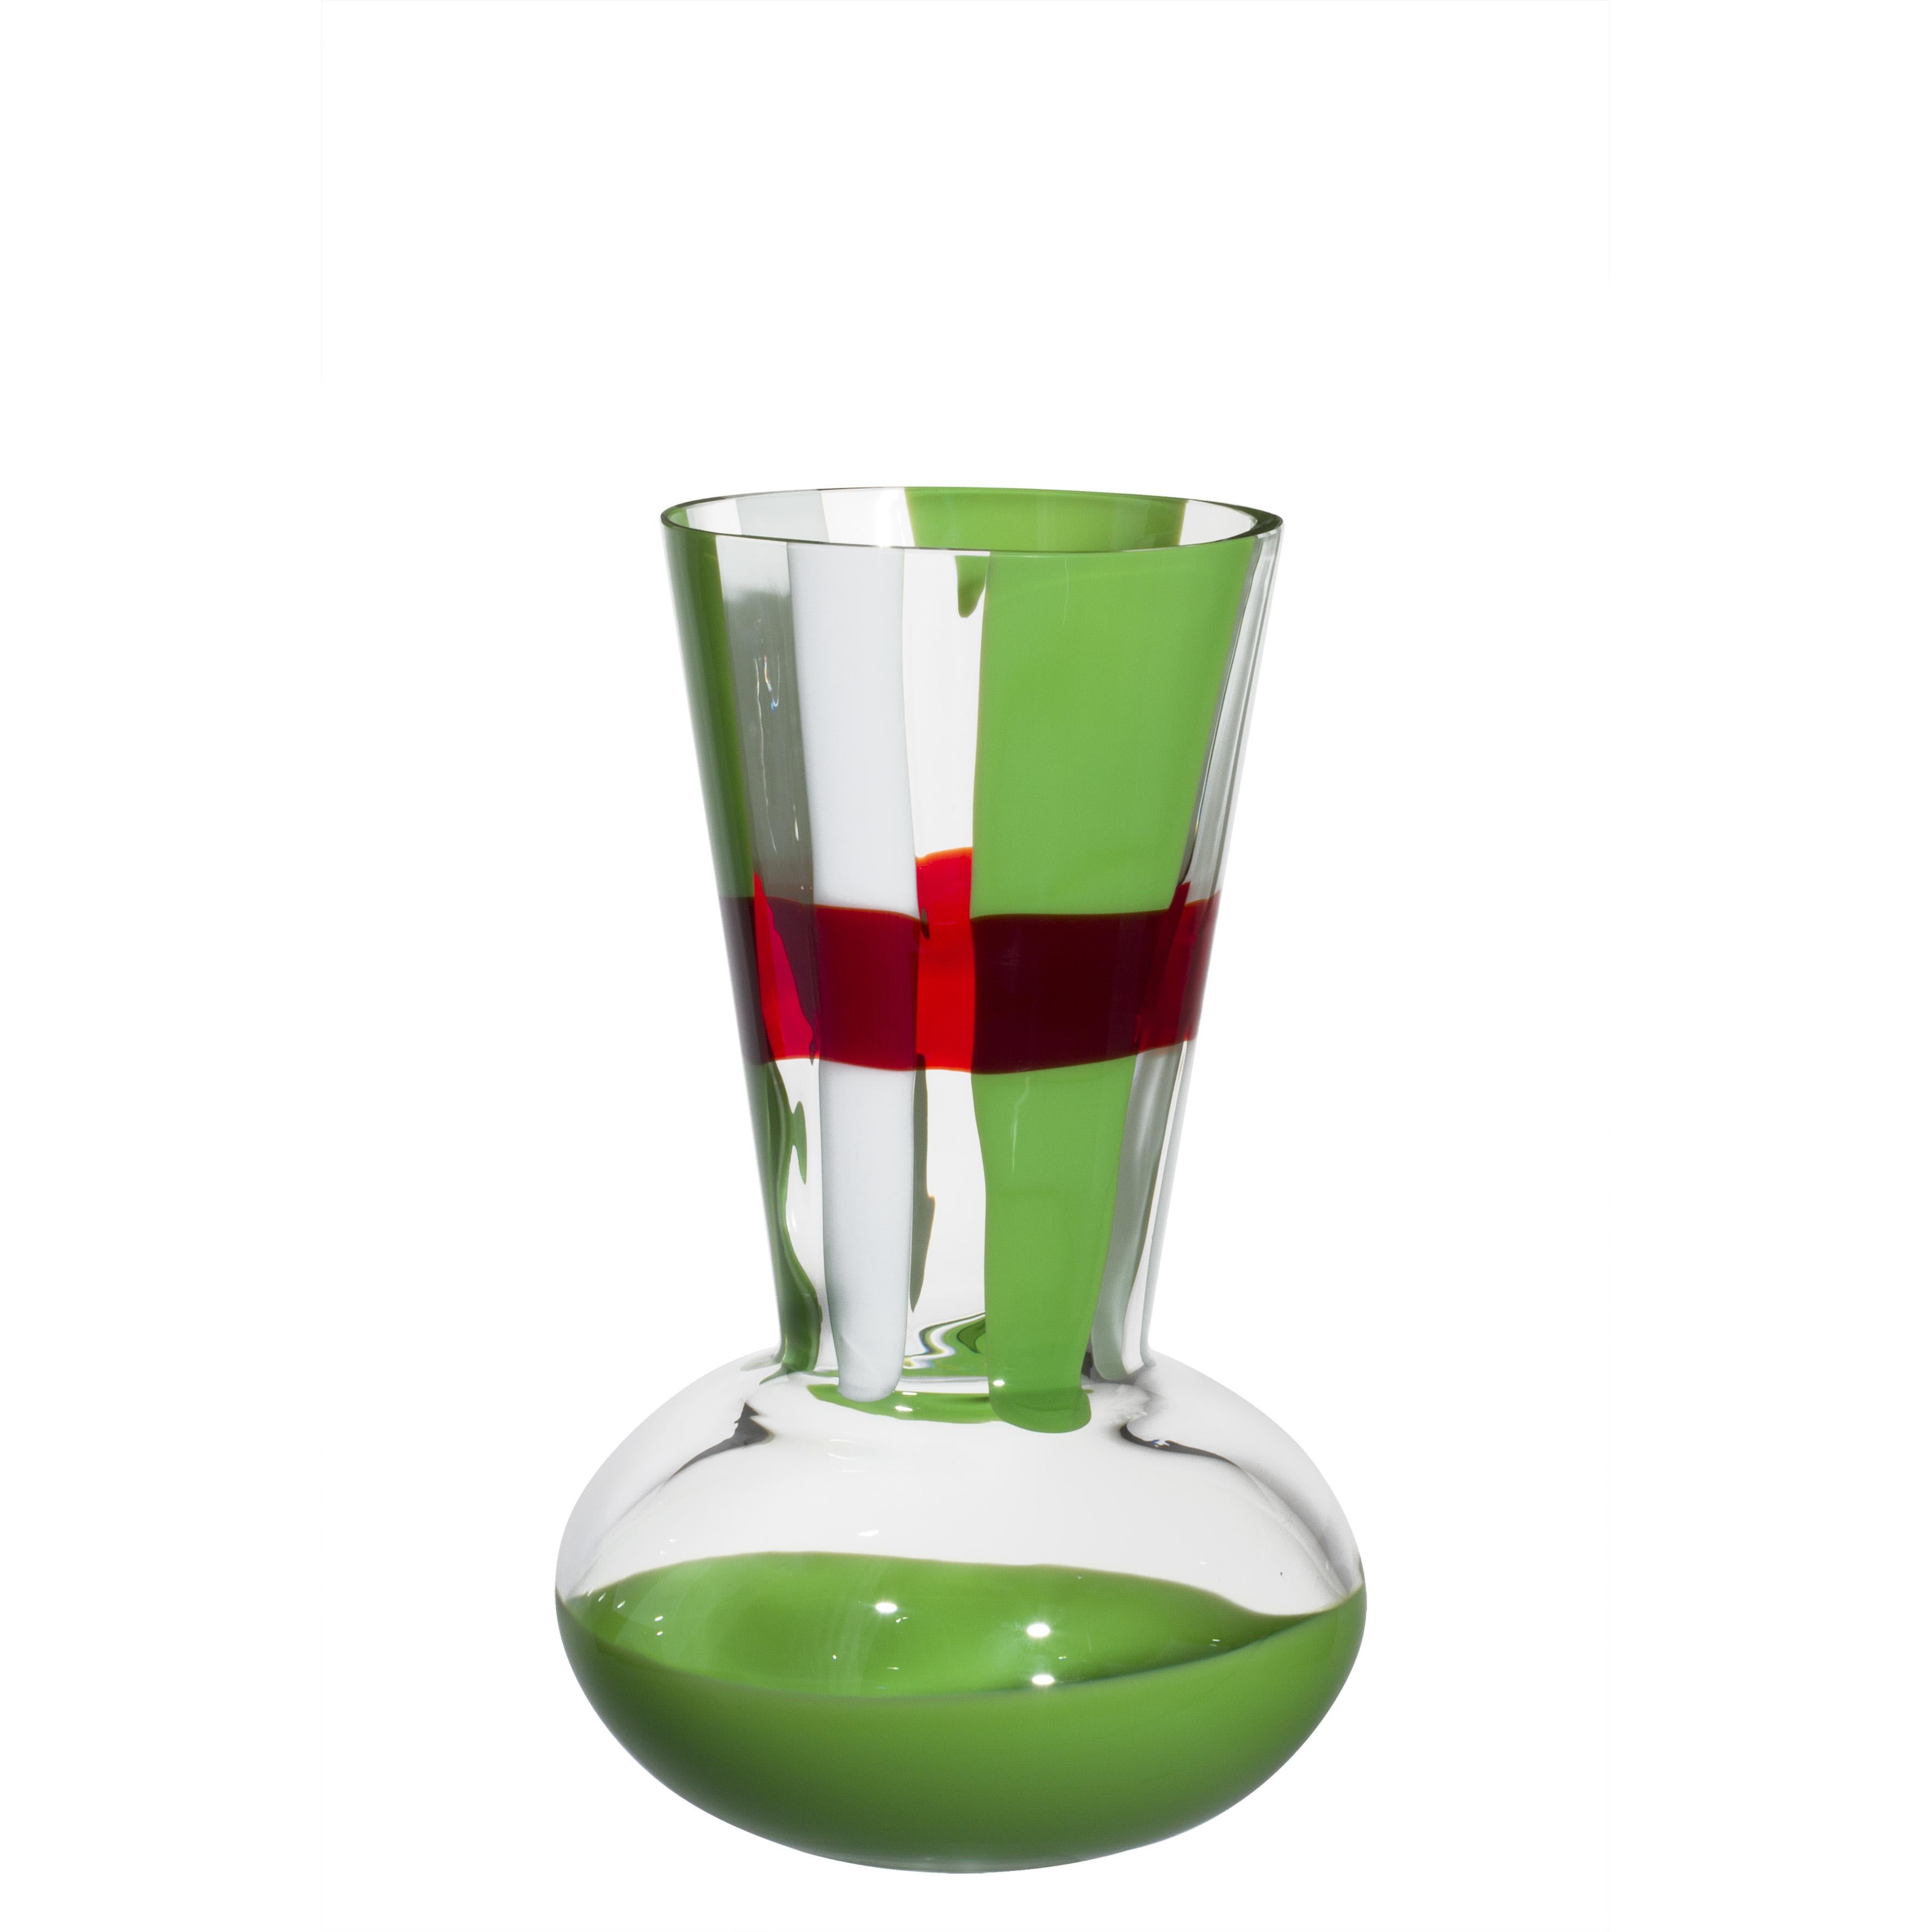 Troncosfera-Vase in Rot, Grün und Weiß von Carlo Moretti